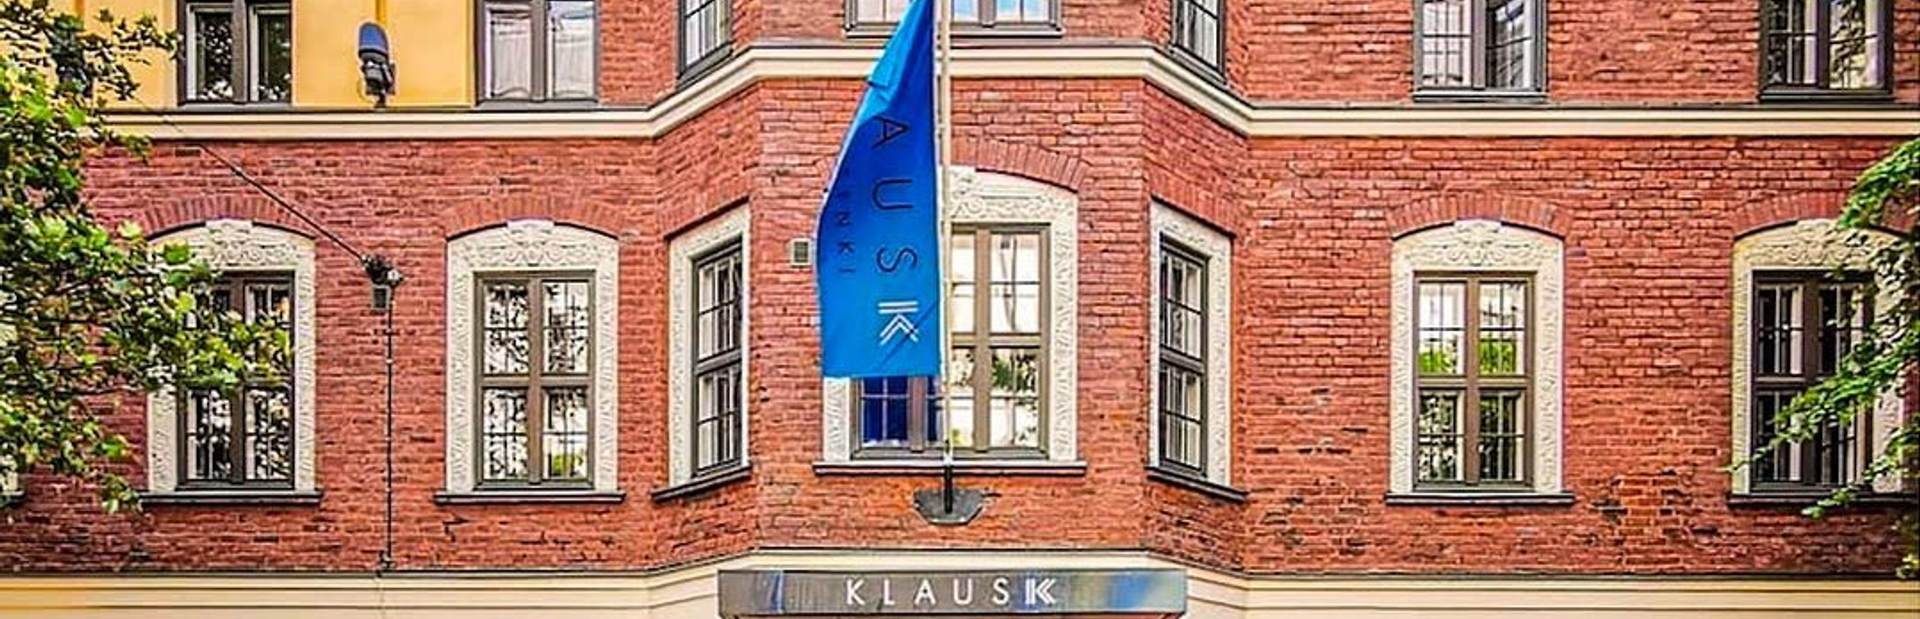 Klaus K Image 1